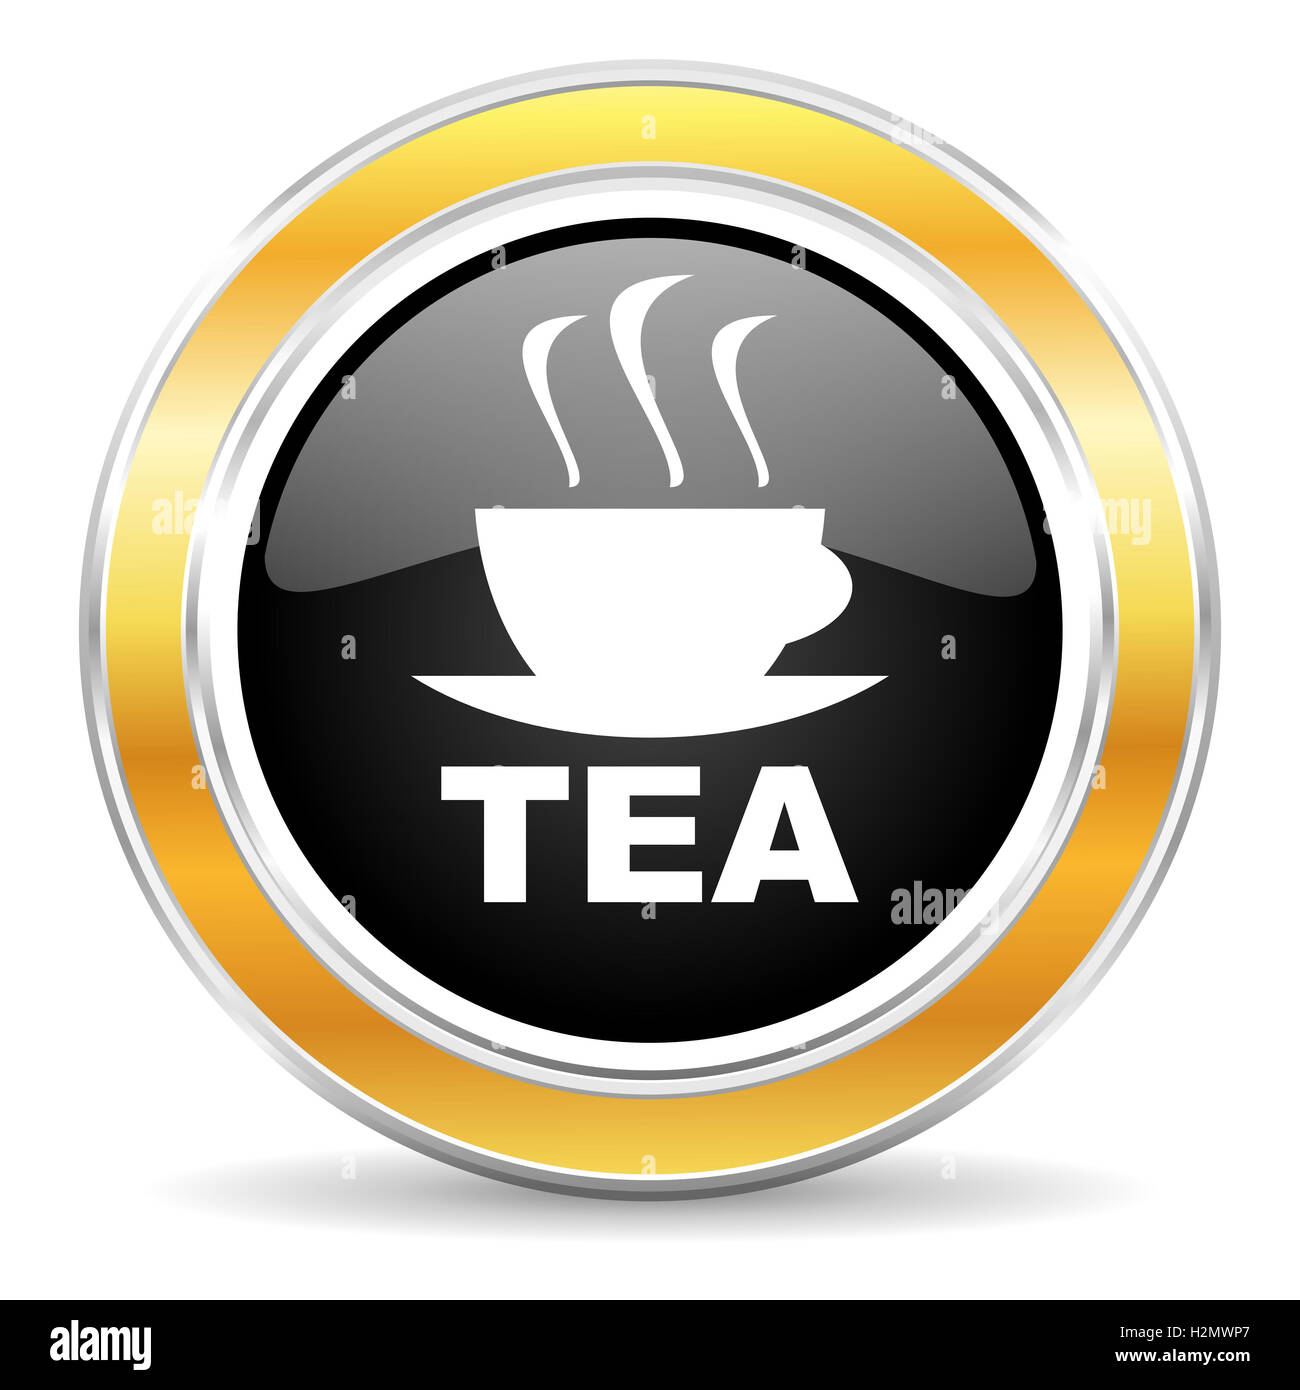 tea icon Stock Photo